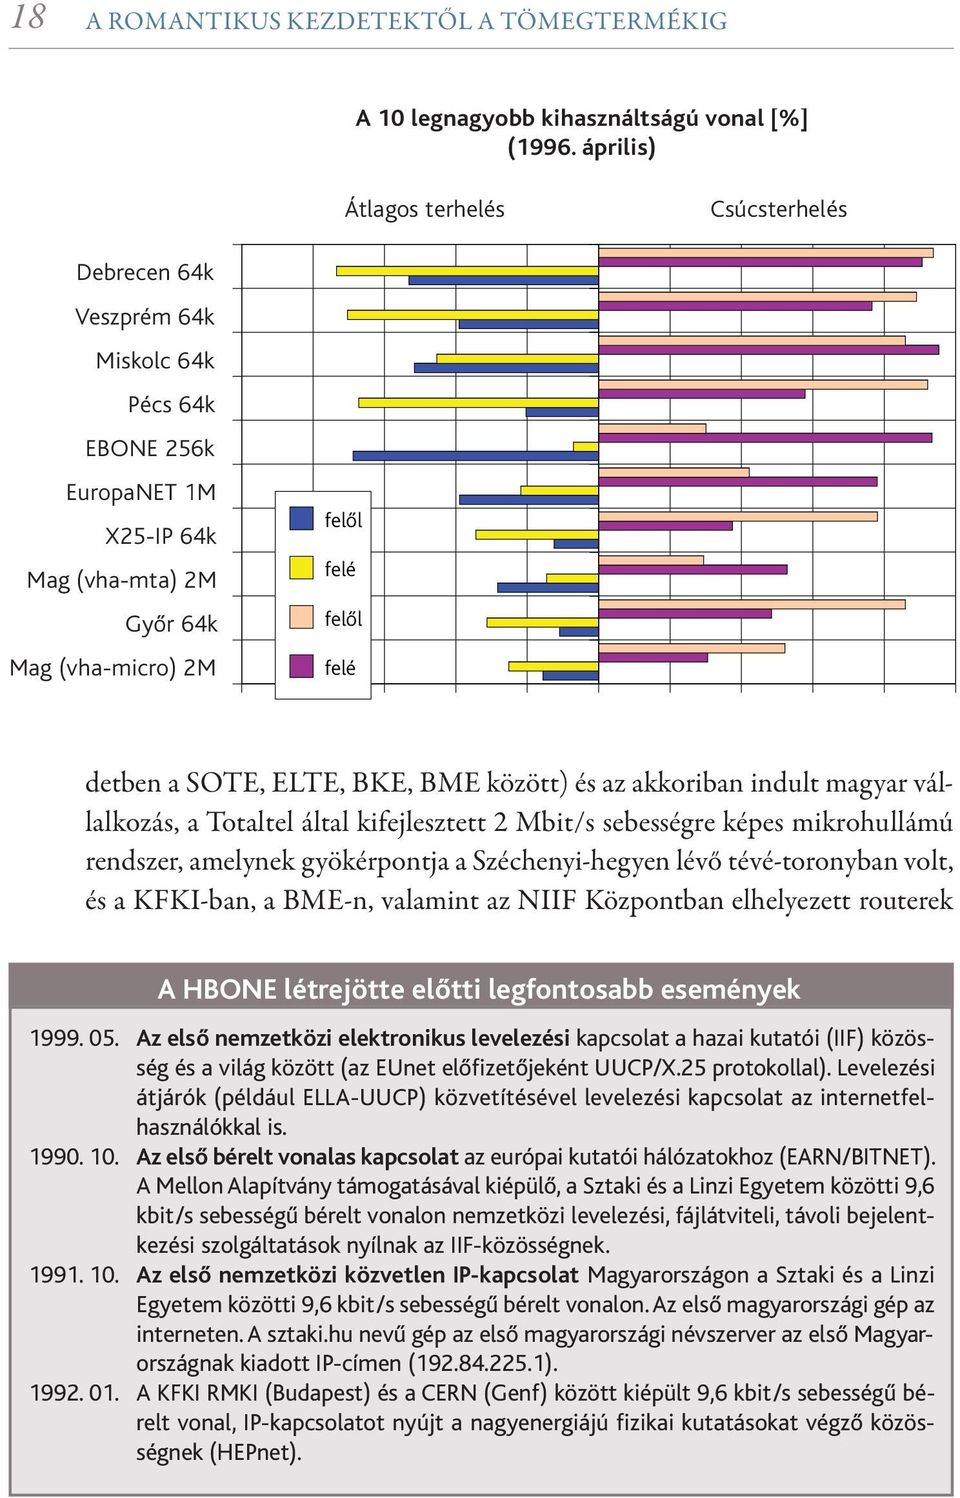 SOTE, ELTE, BKE, BME között) és az akkoriban indult magyar vállalkozás, a Totaltel által kifejlesztett 2 Mbit/s sebességre képes mikrohullámú rendszer, amelynek gyökérpontja a Széchenyi-hegyen lévő